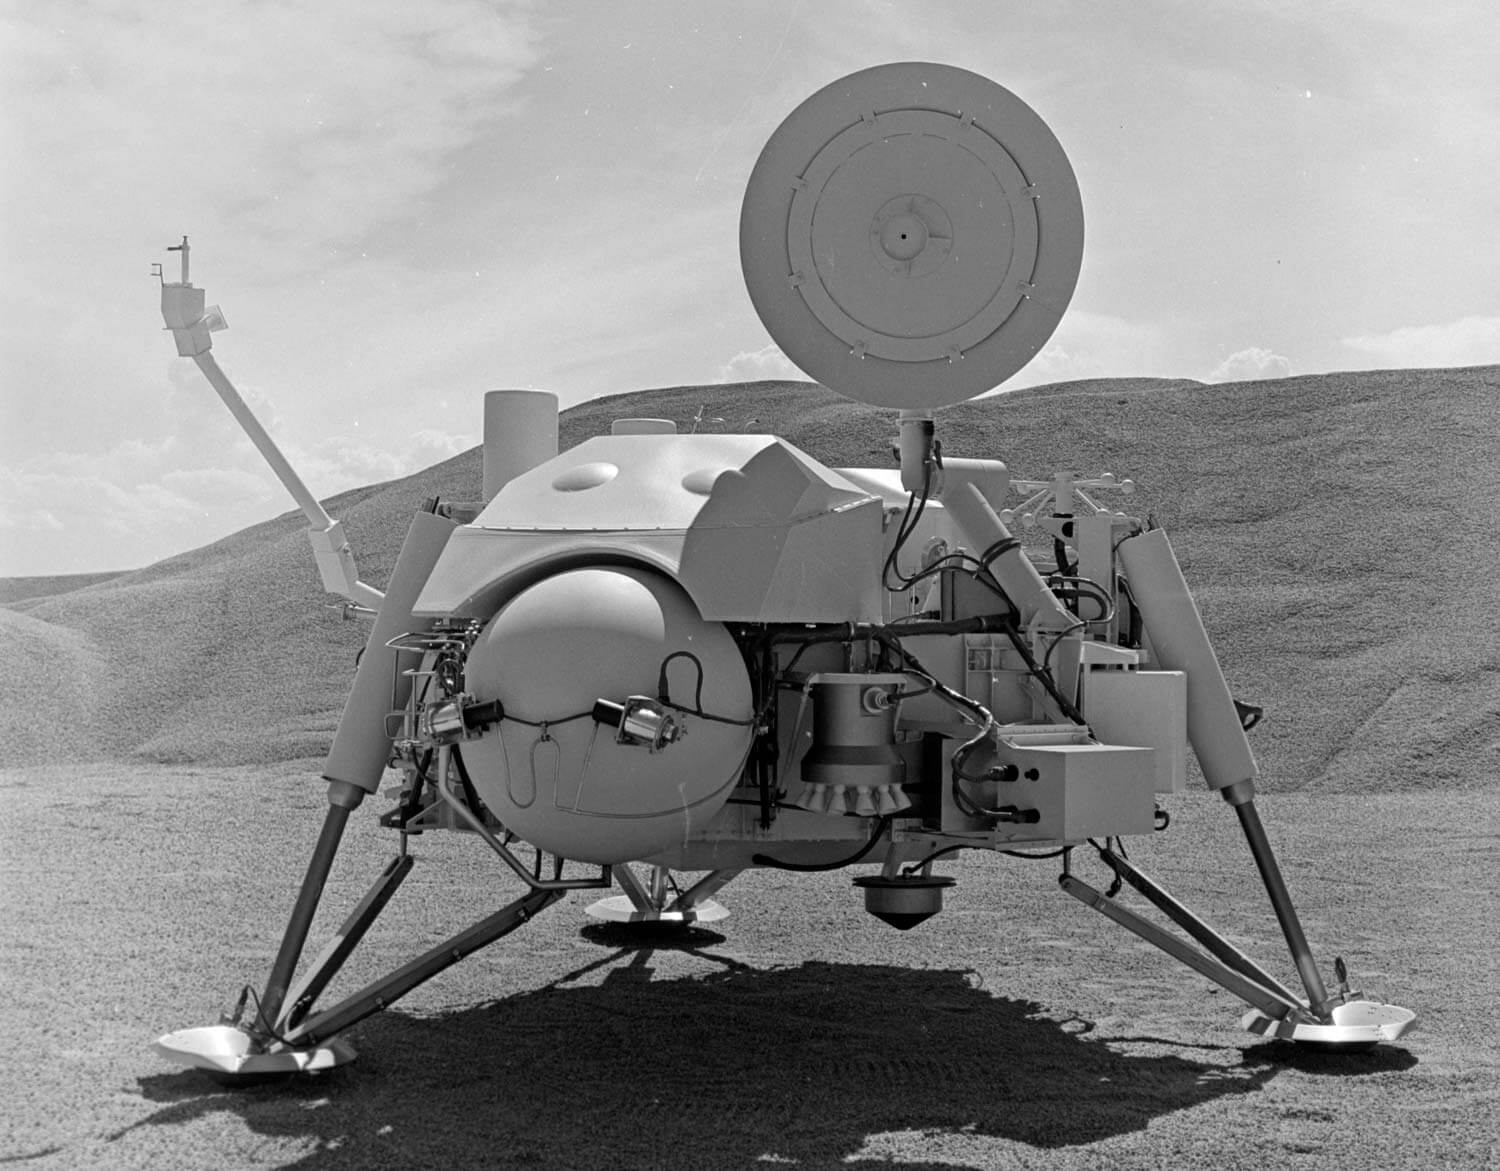 На Марсе есть жизнь? Аппарат «Викинг-1» мог убить жизнь на Марсе. Фото.